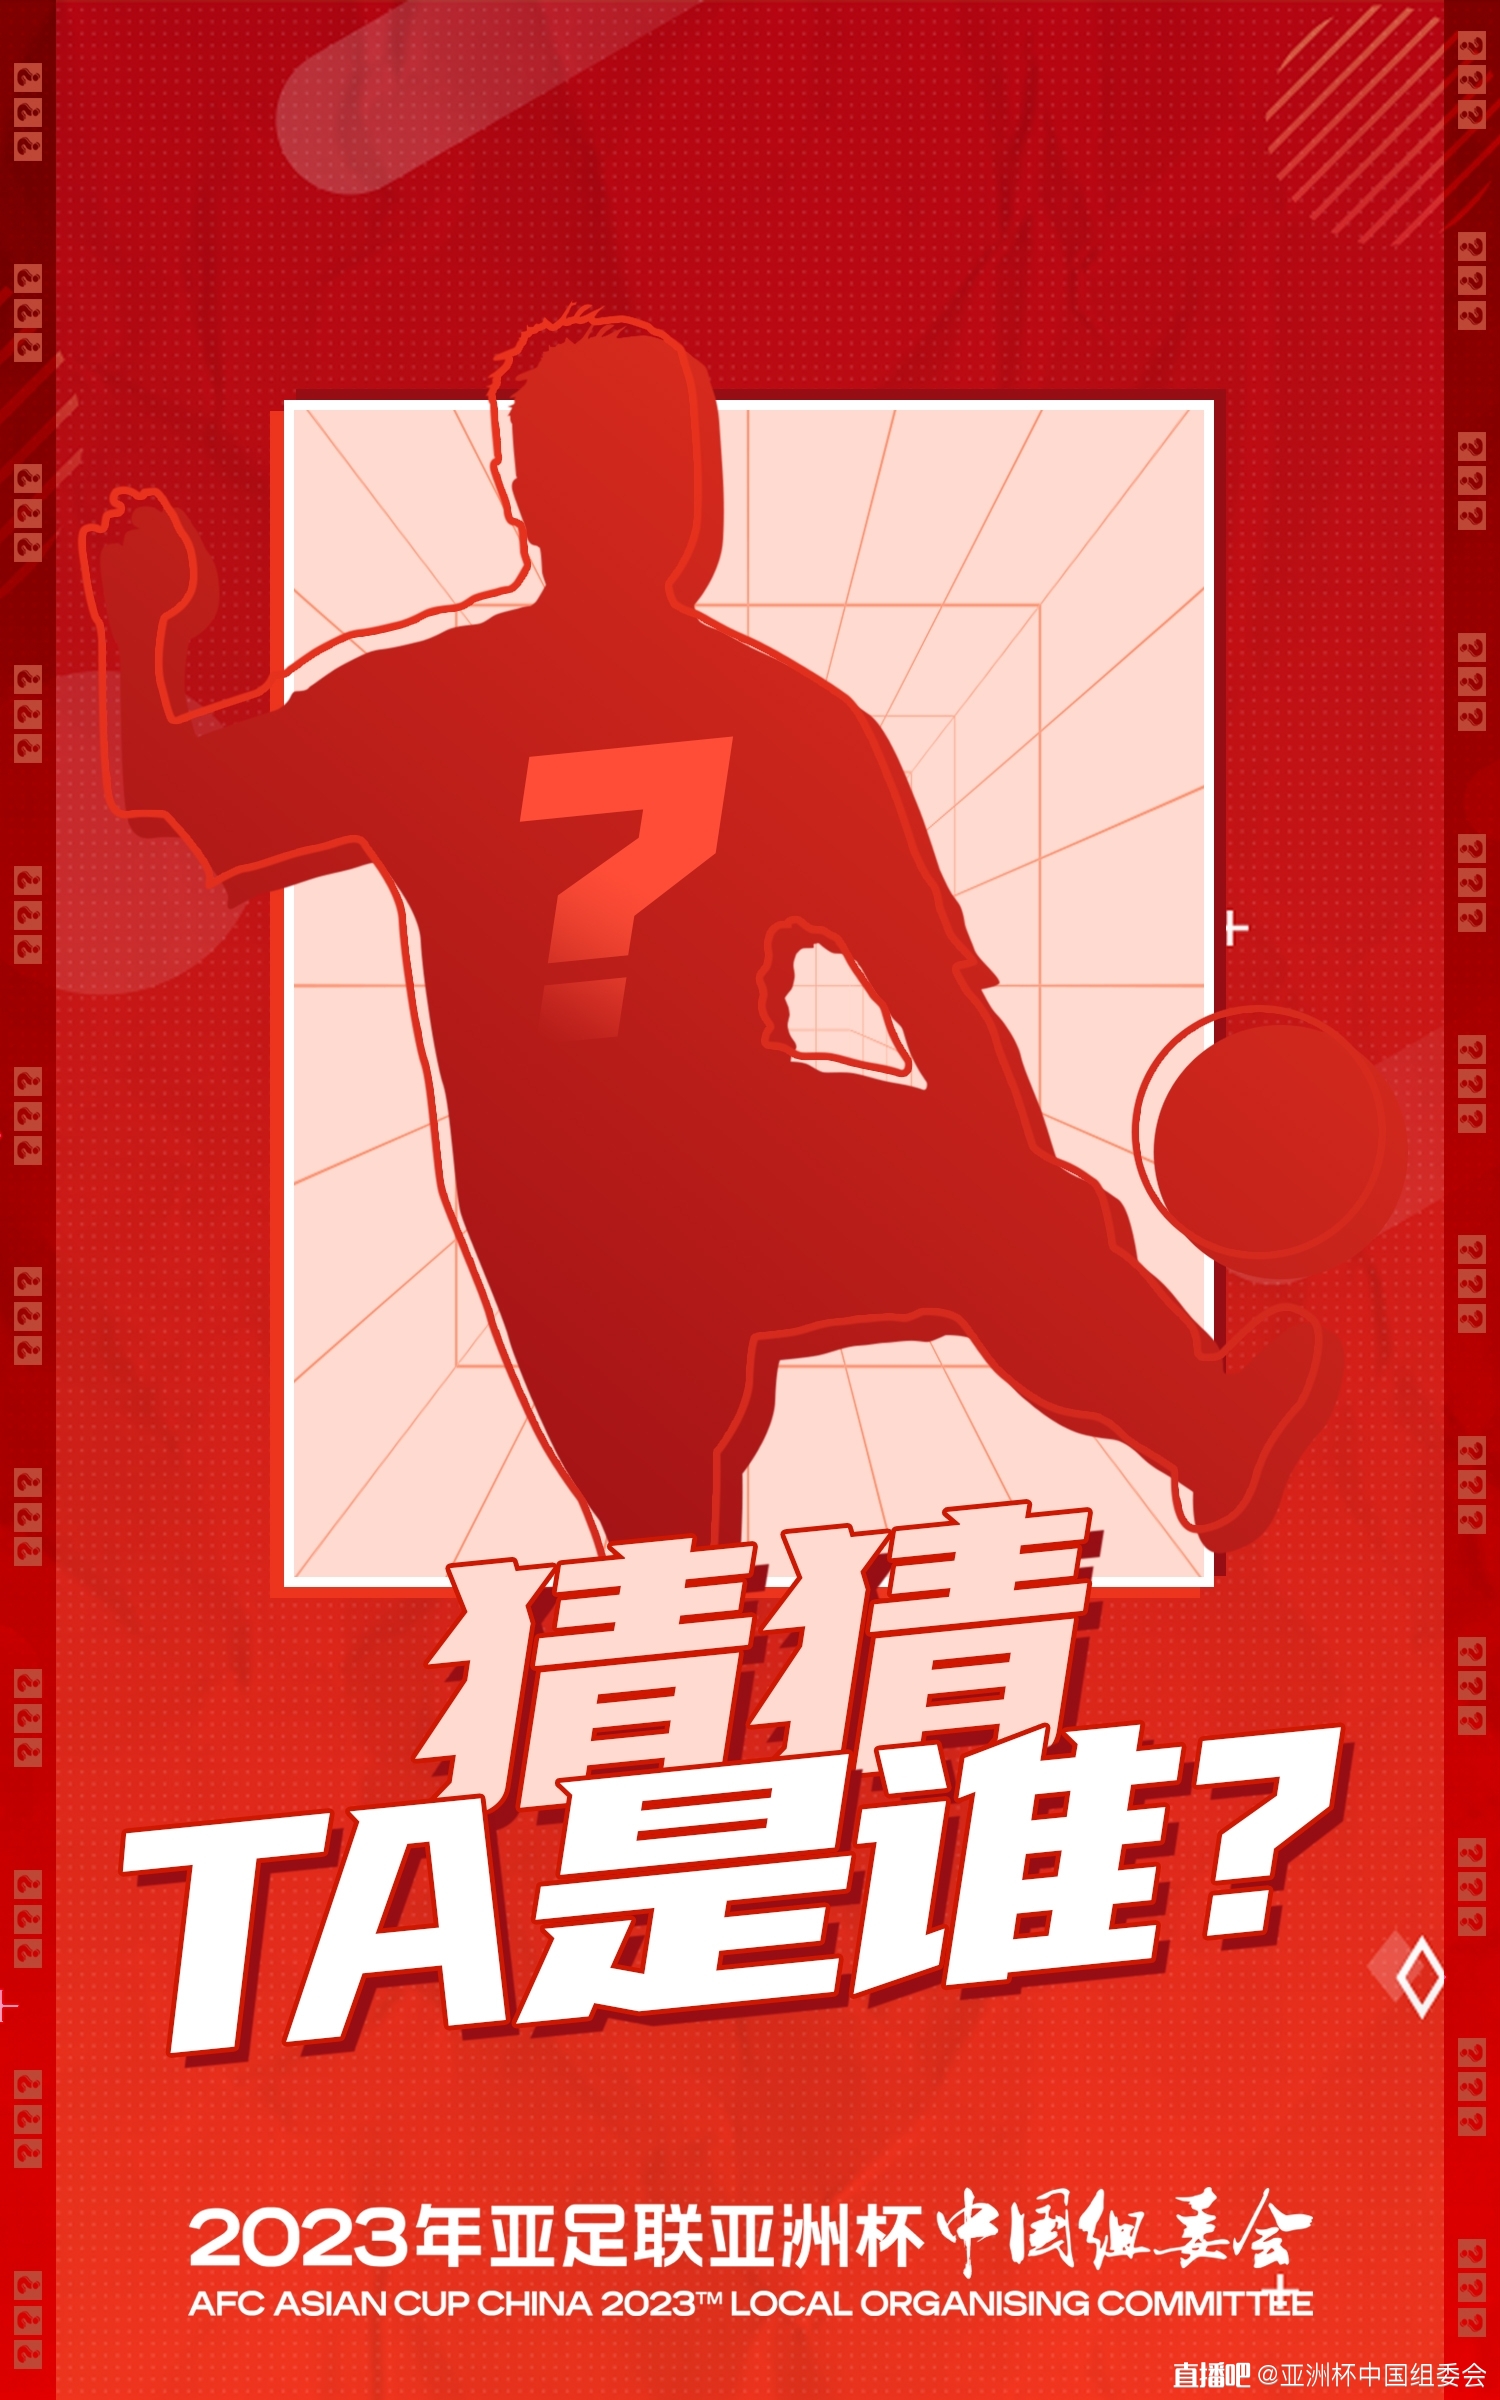 你能猜到这位中国球员是谁吗？